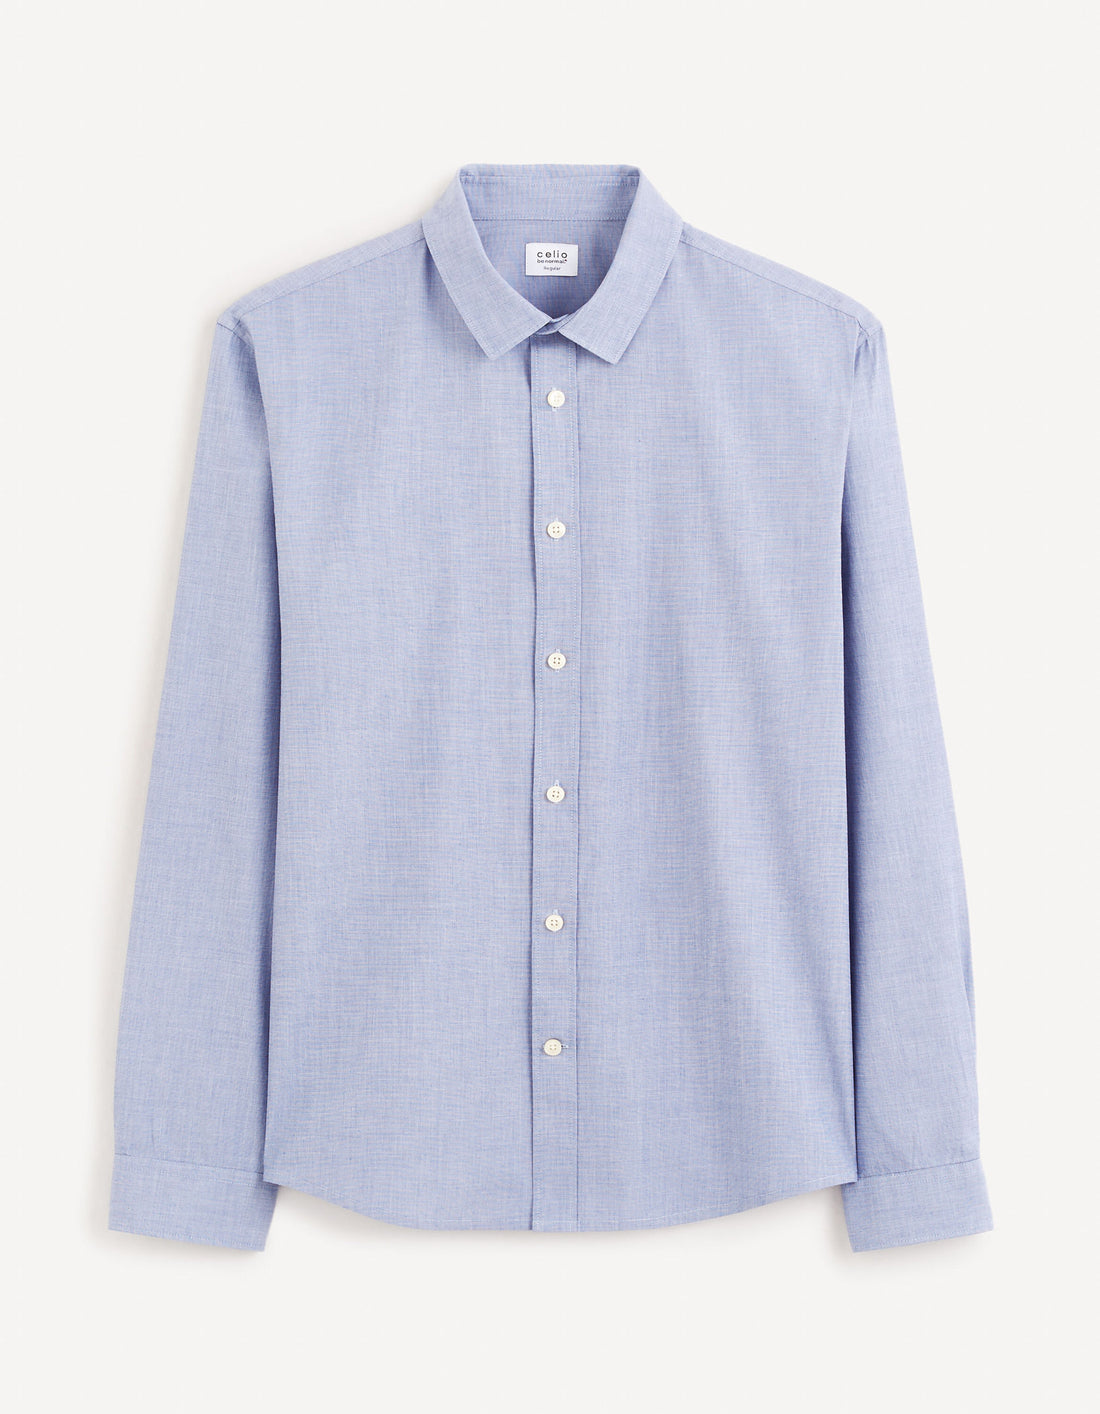 Regular Shirt 100% Cotton - Blue_FAFILE_BLUE_02